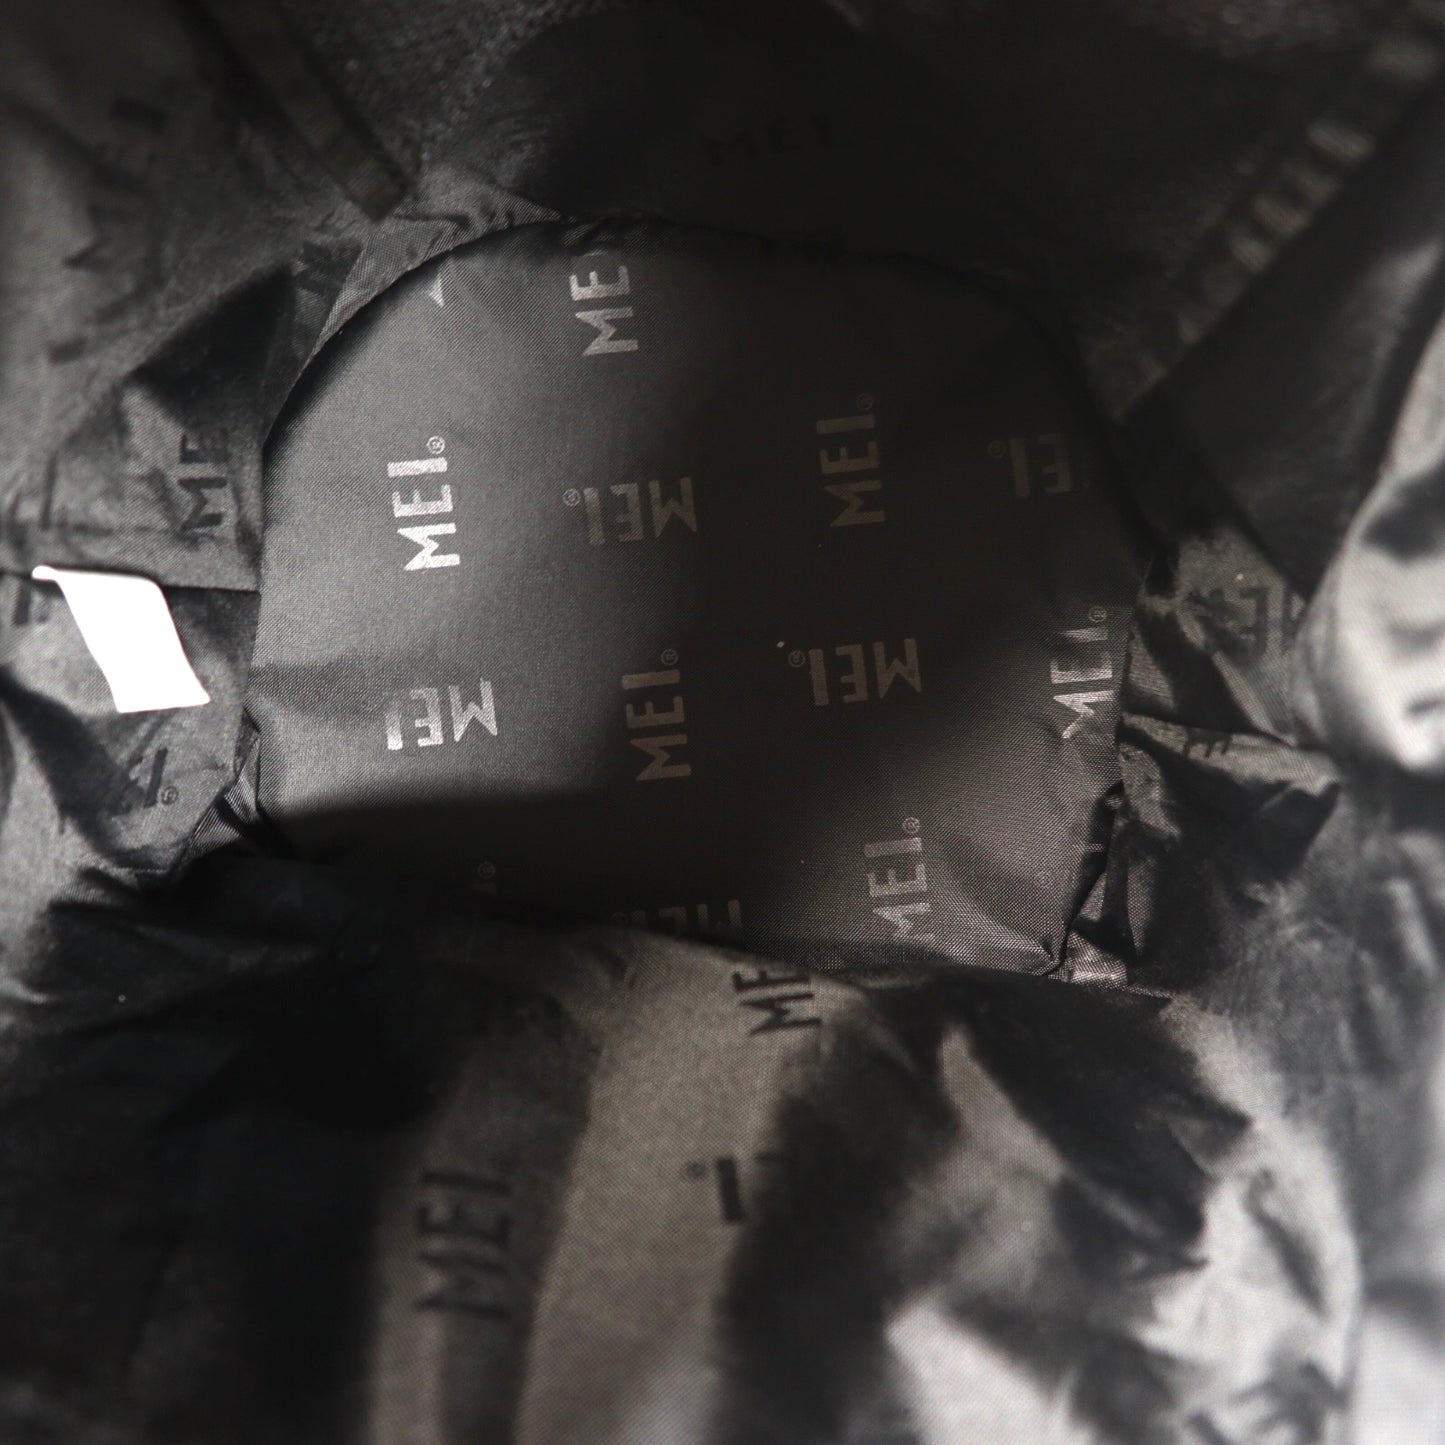 MEI 巾着ショルダーバッグ ナップザック ブラック TASLAN DRAW BAG 未使用品